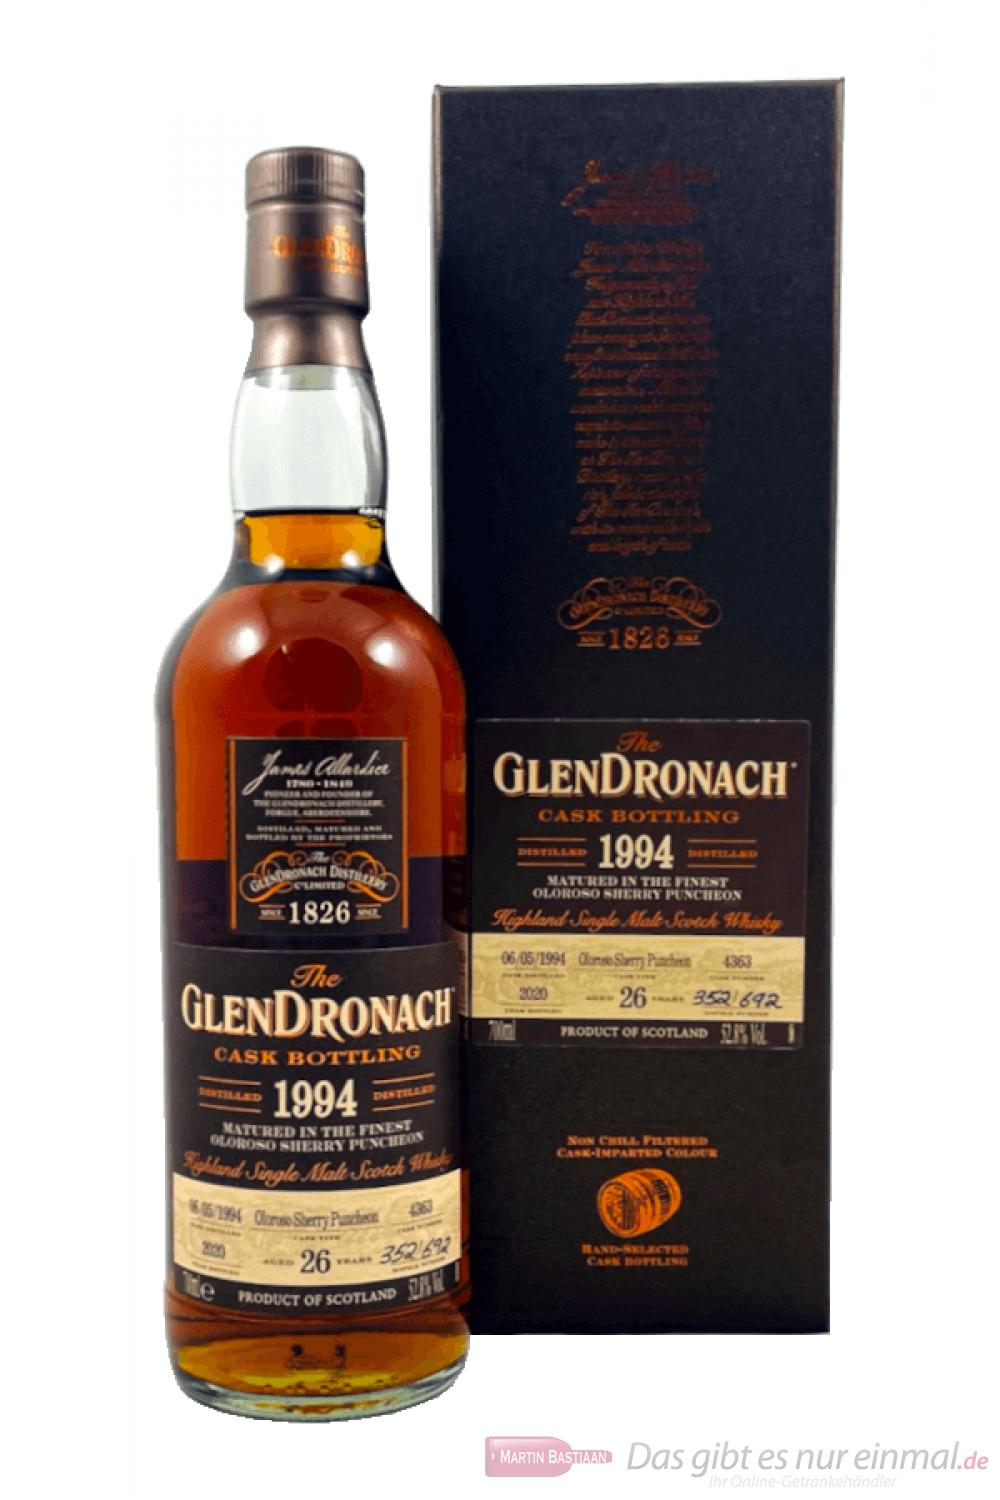 Glendronach Cask Bottling 1994 26 Years Single Malt Scotch Whisky 0,7l